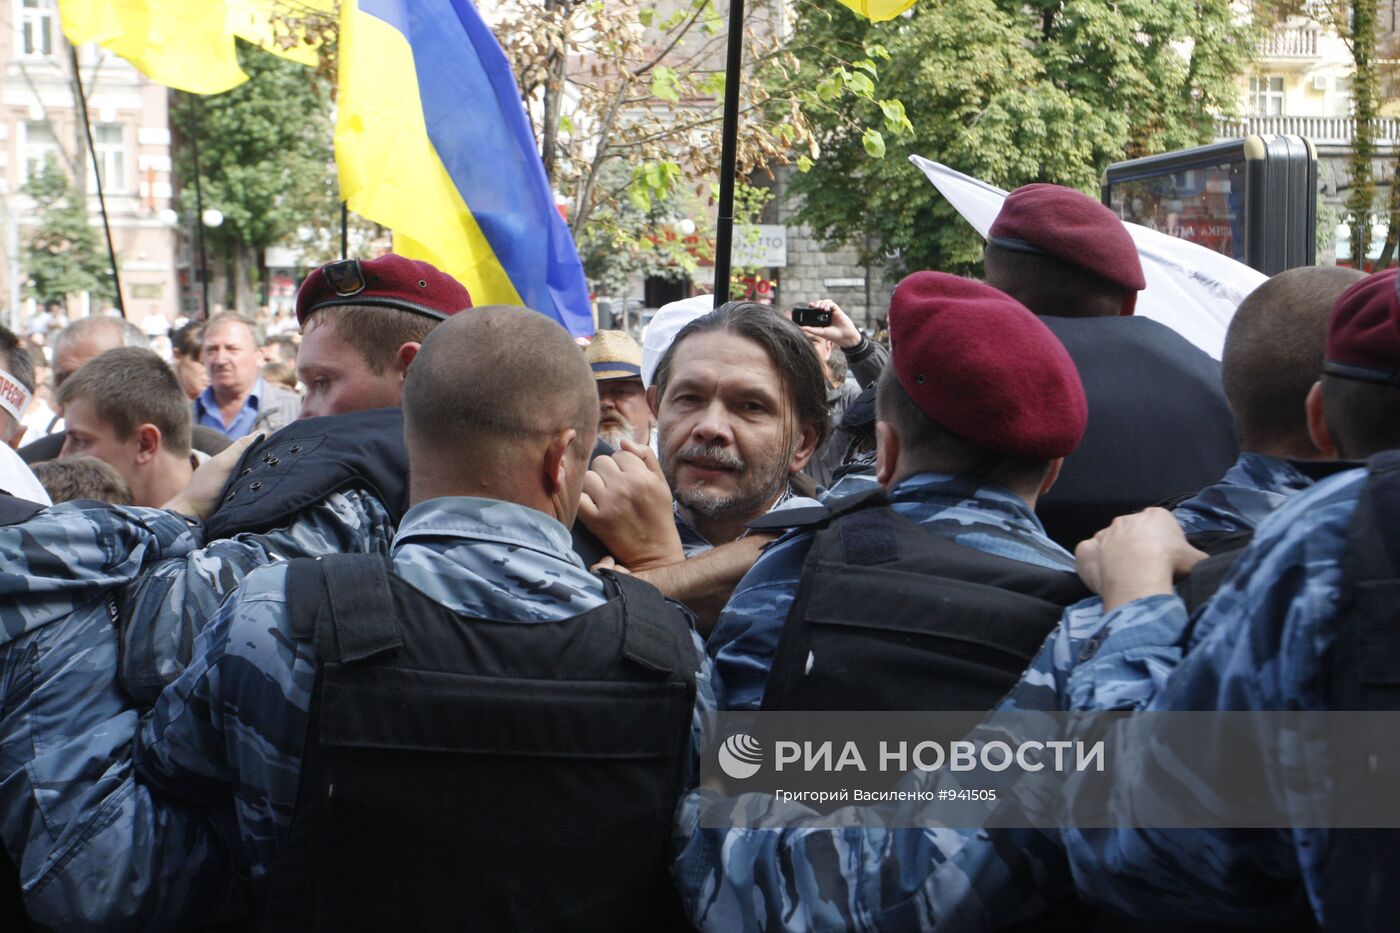 Столкновения бойцов "Беркута" и сторонников Юлии Тимошенко